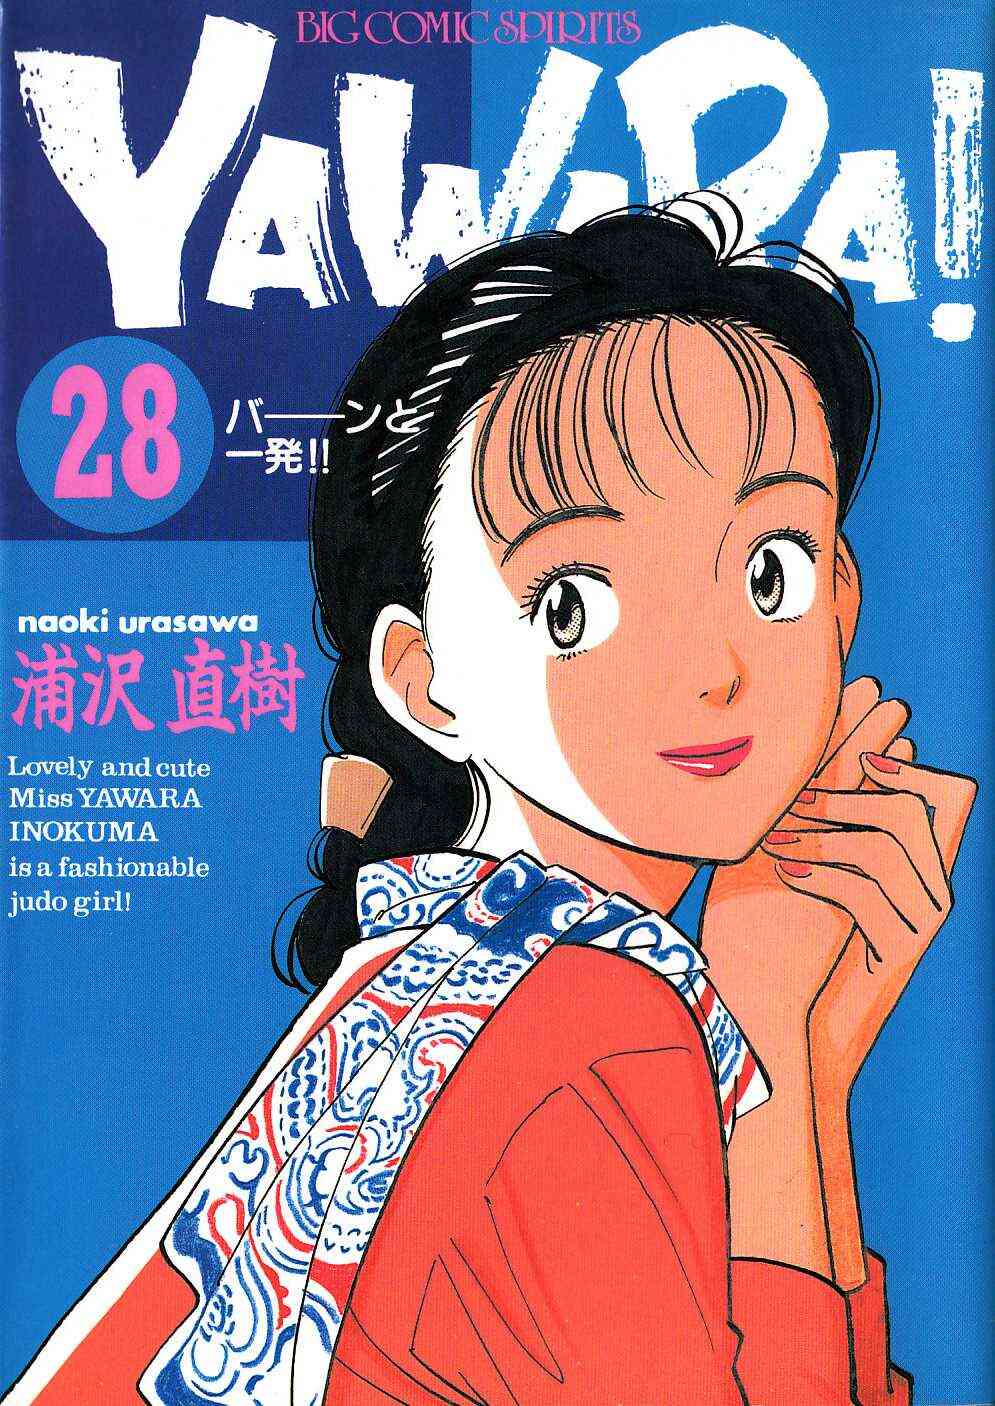 Yawara 1 29巻 全巻 漫画全巻ドットコム